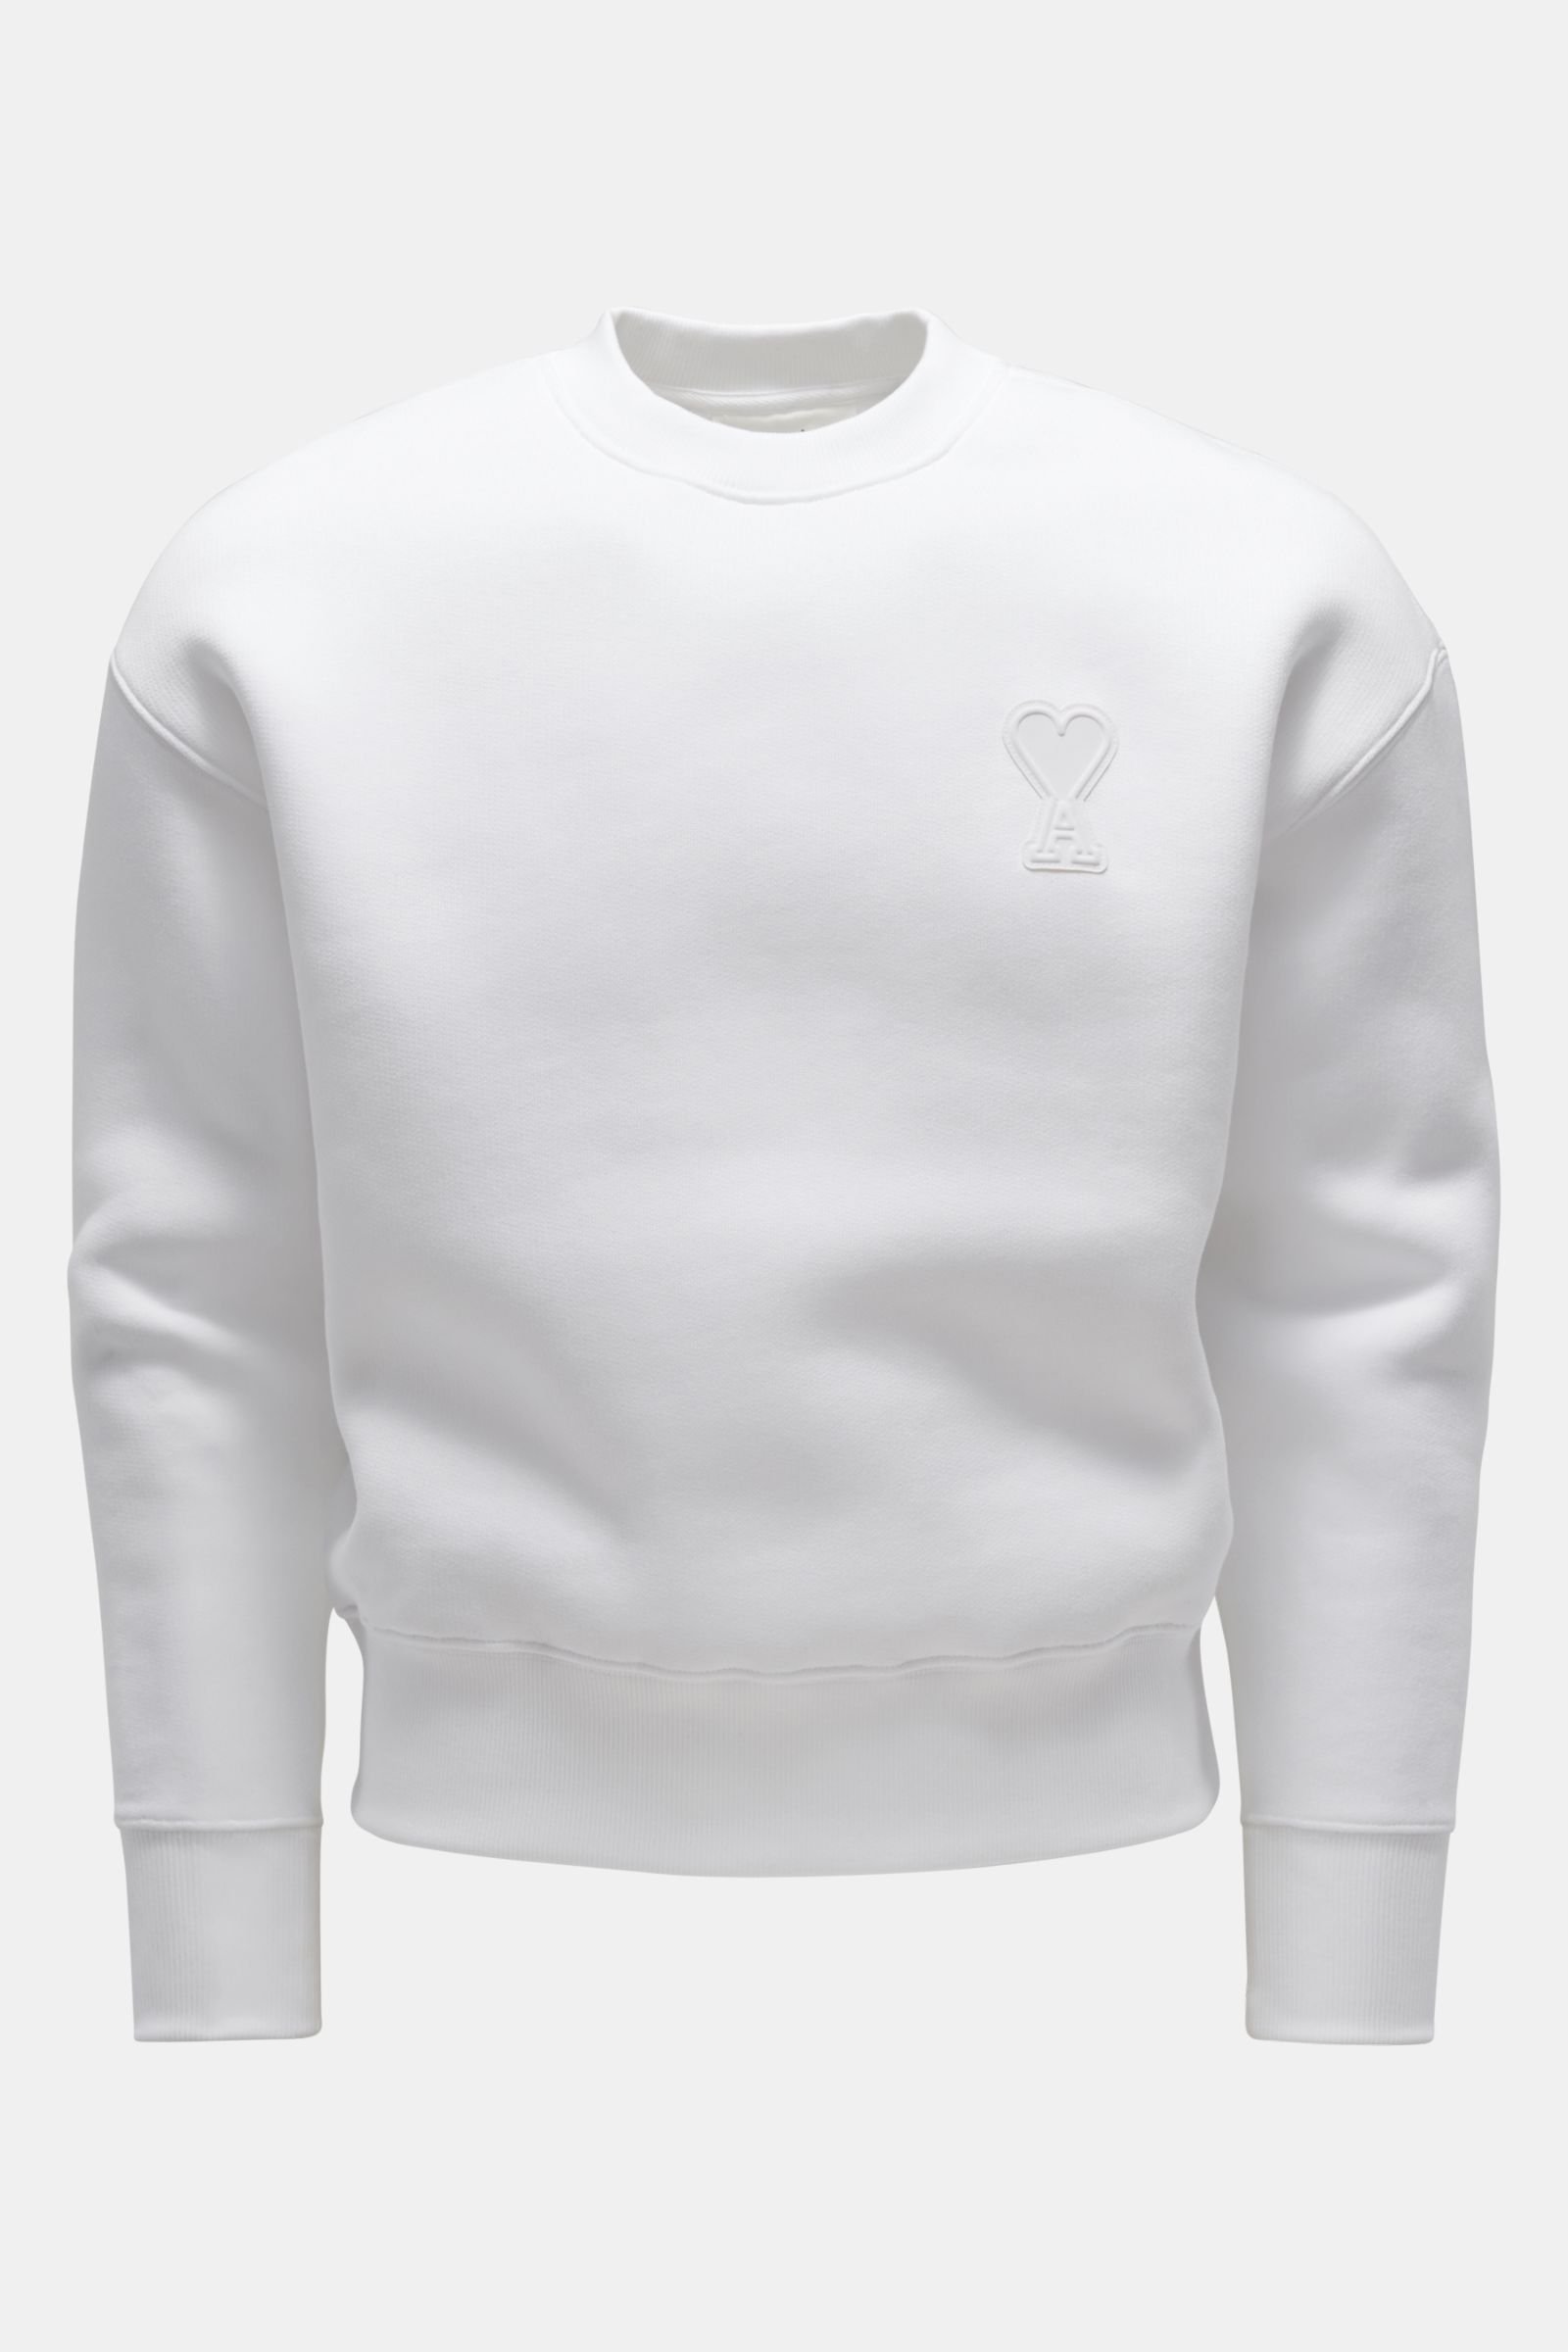 Neoprene crew neck sweatshirt white